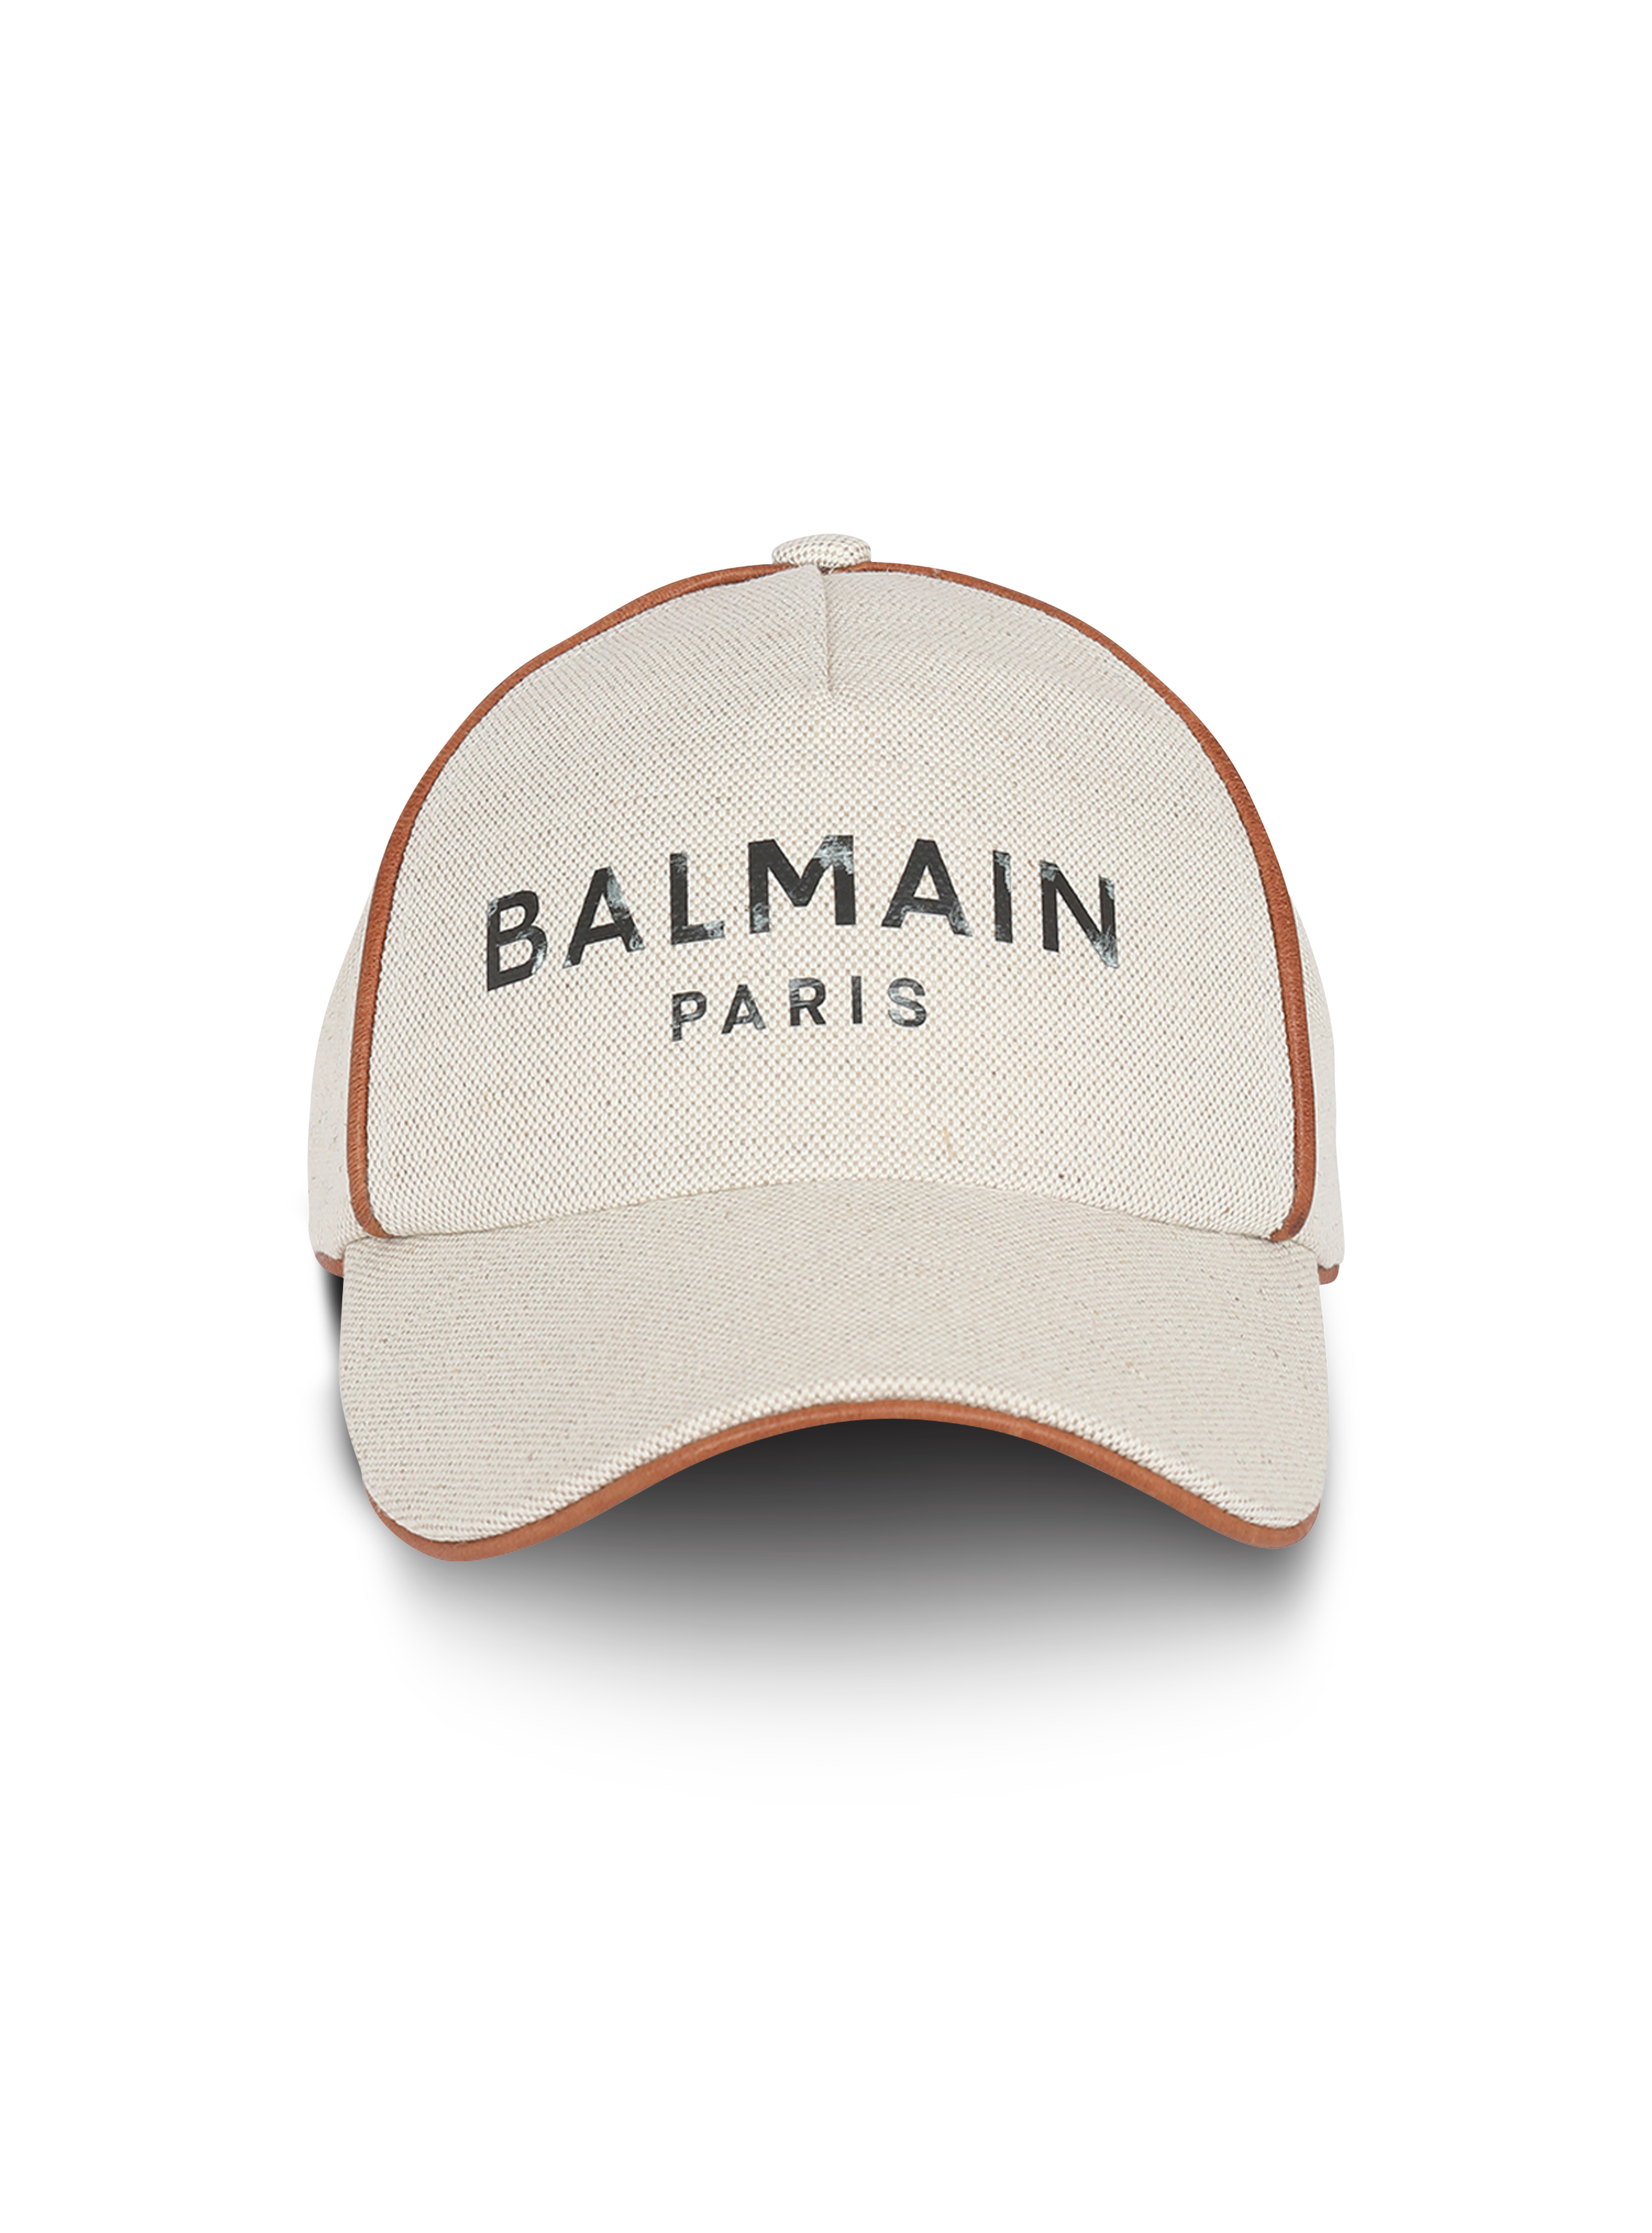 Cotton B-Army cap with Balmain logo, white